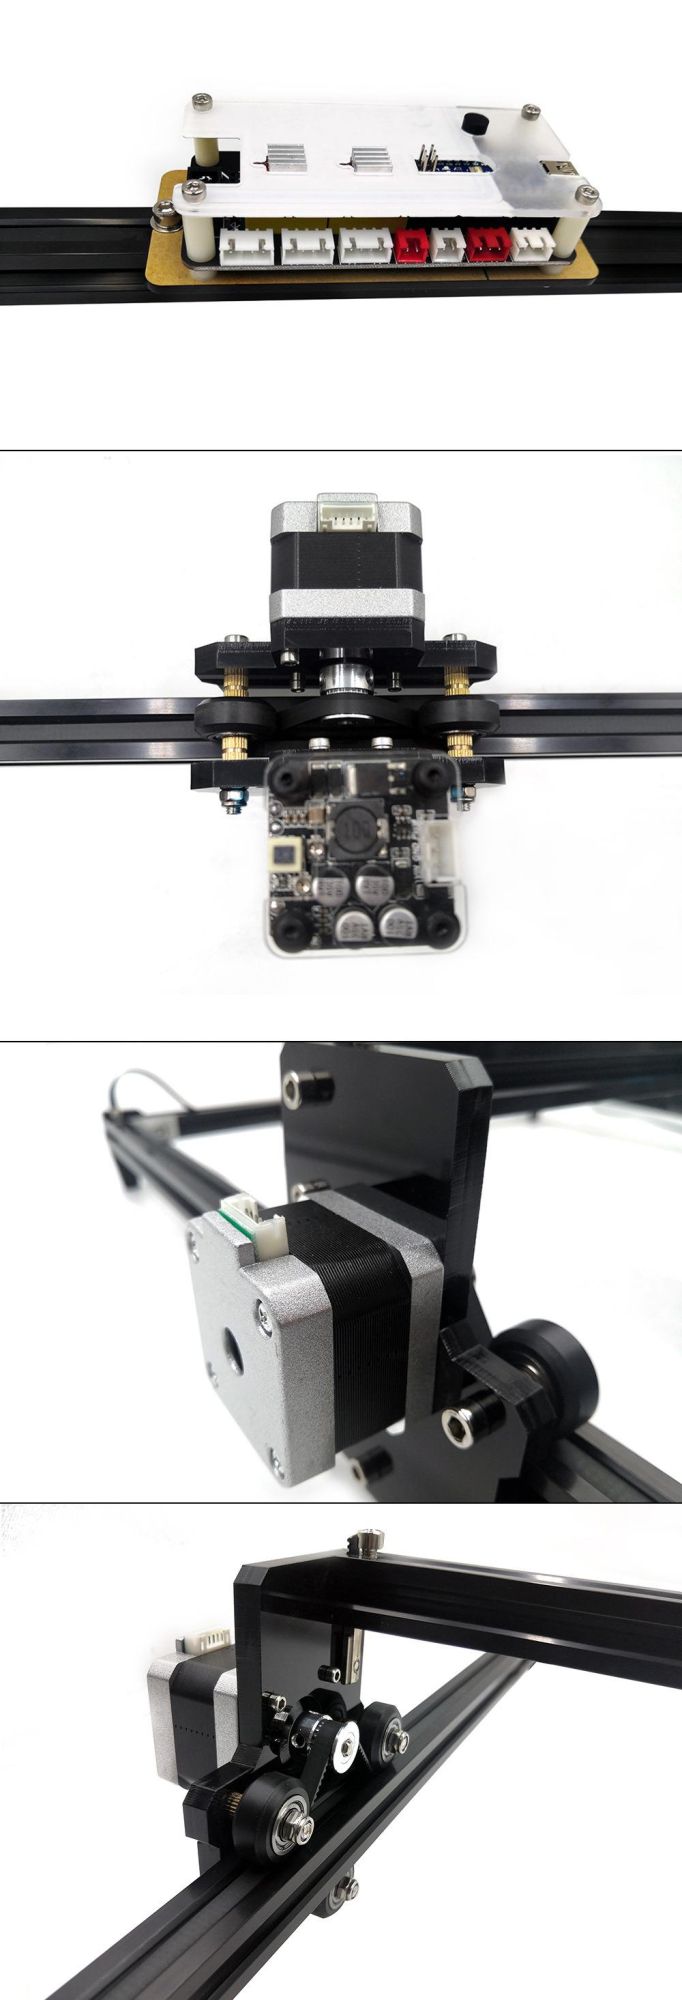 Laser Master 2 Engraving Machine 32-Bit DIY Laser Engraver Metal Cutting 3D Printer with Safety Protection CNC Laser